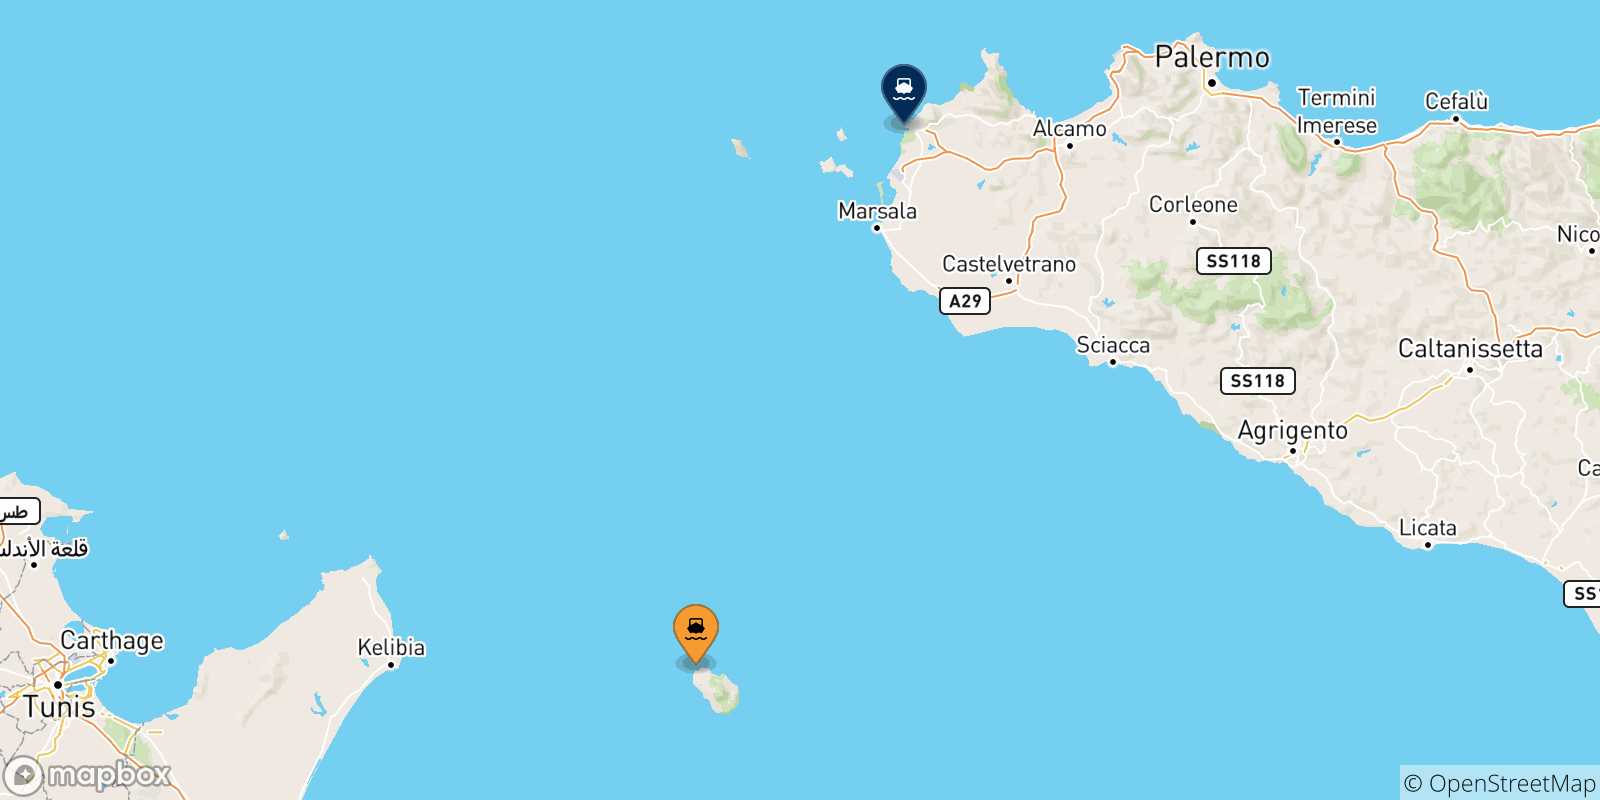 Mappa delle destinazioni raggiungibili dall' Isola Di Pantelleria